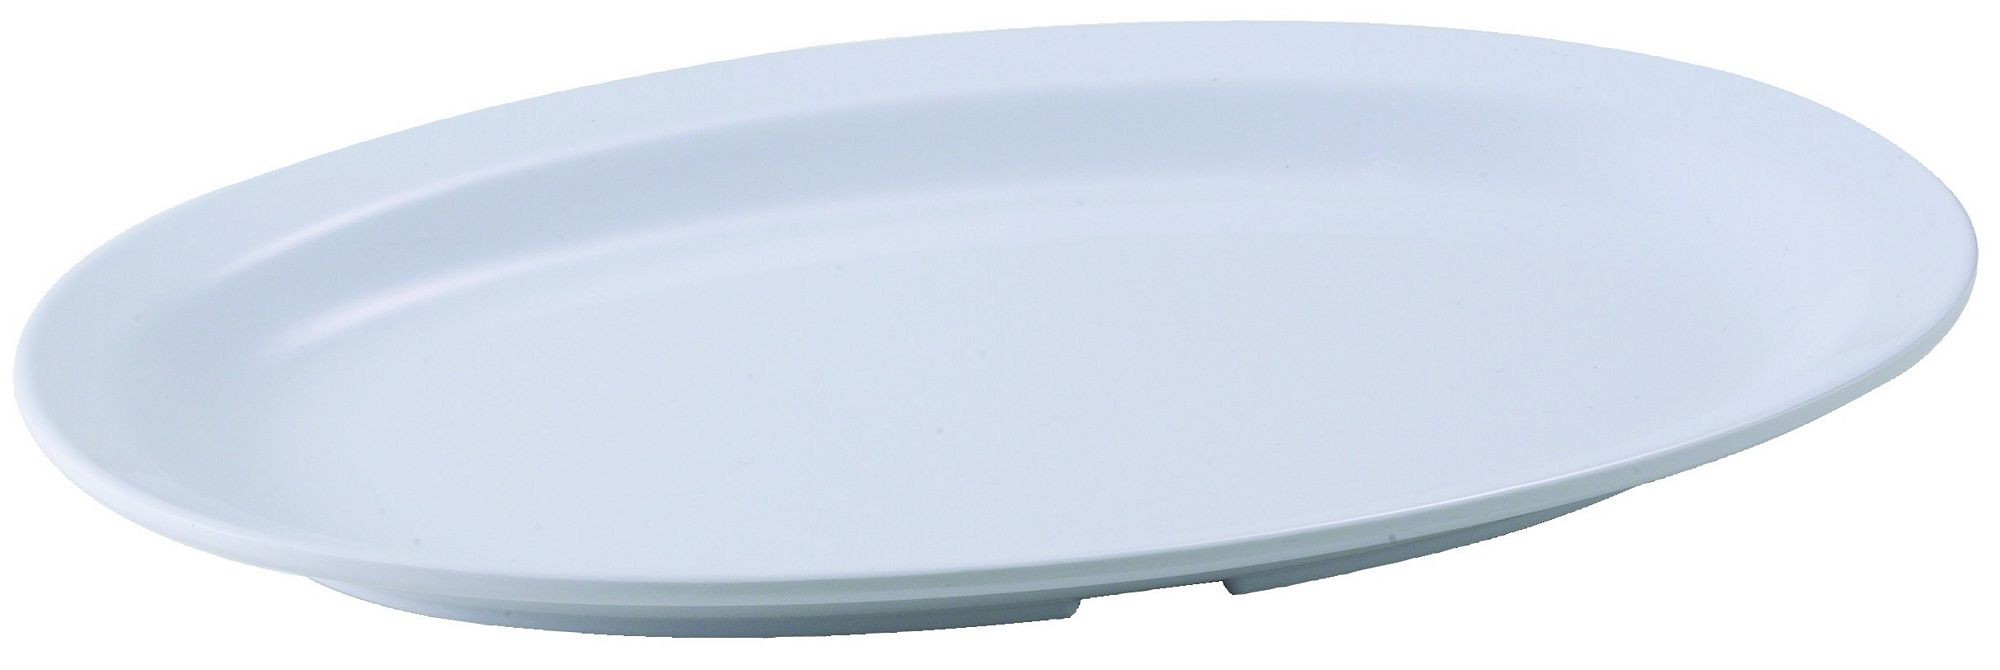 Winco MMPO-118W White Melamine 11 1/2" x 8" Oval Platter with Narrow Rim